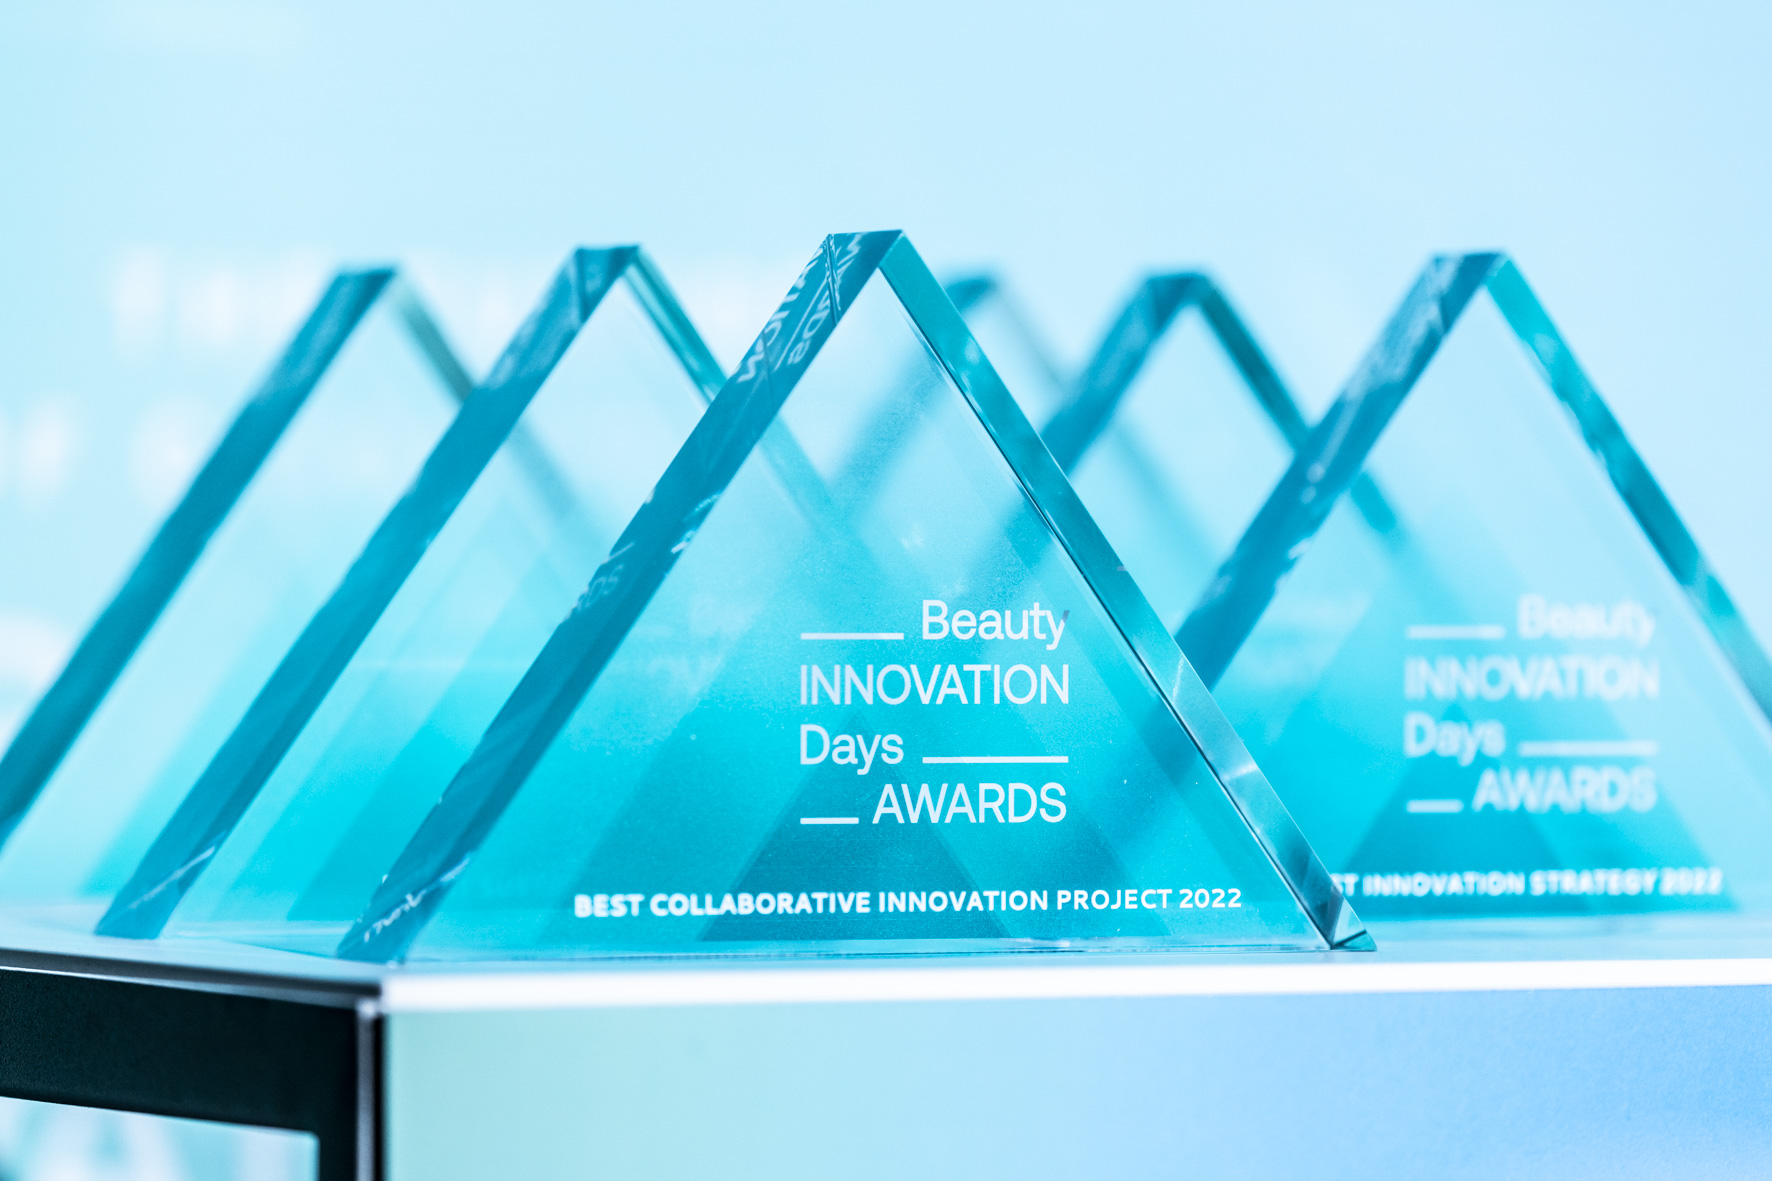 Repigment12 ha sido galardonado con el premio “Most Innovative Technology” en los Beauty Innovation Days